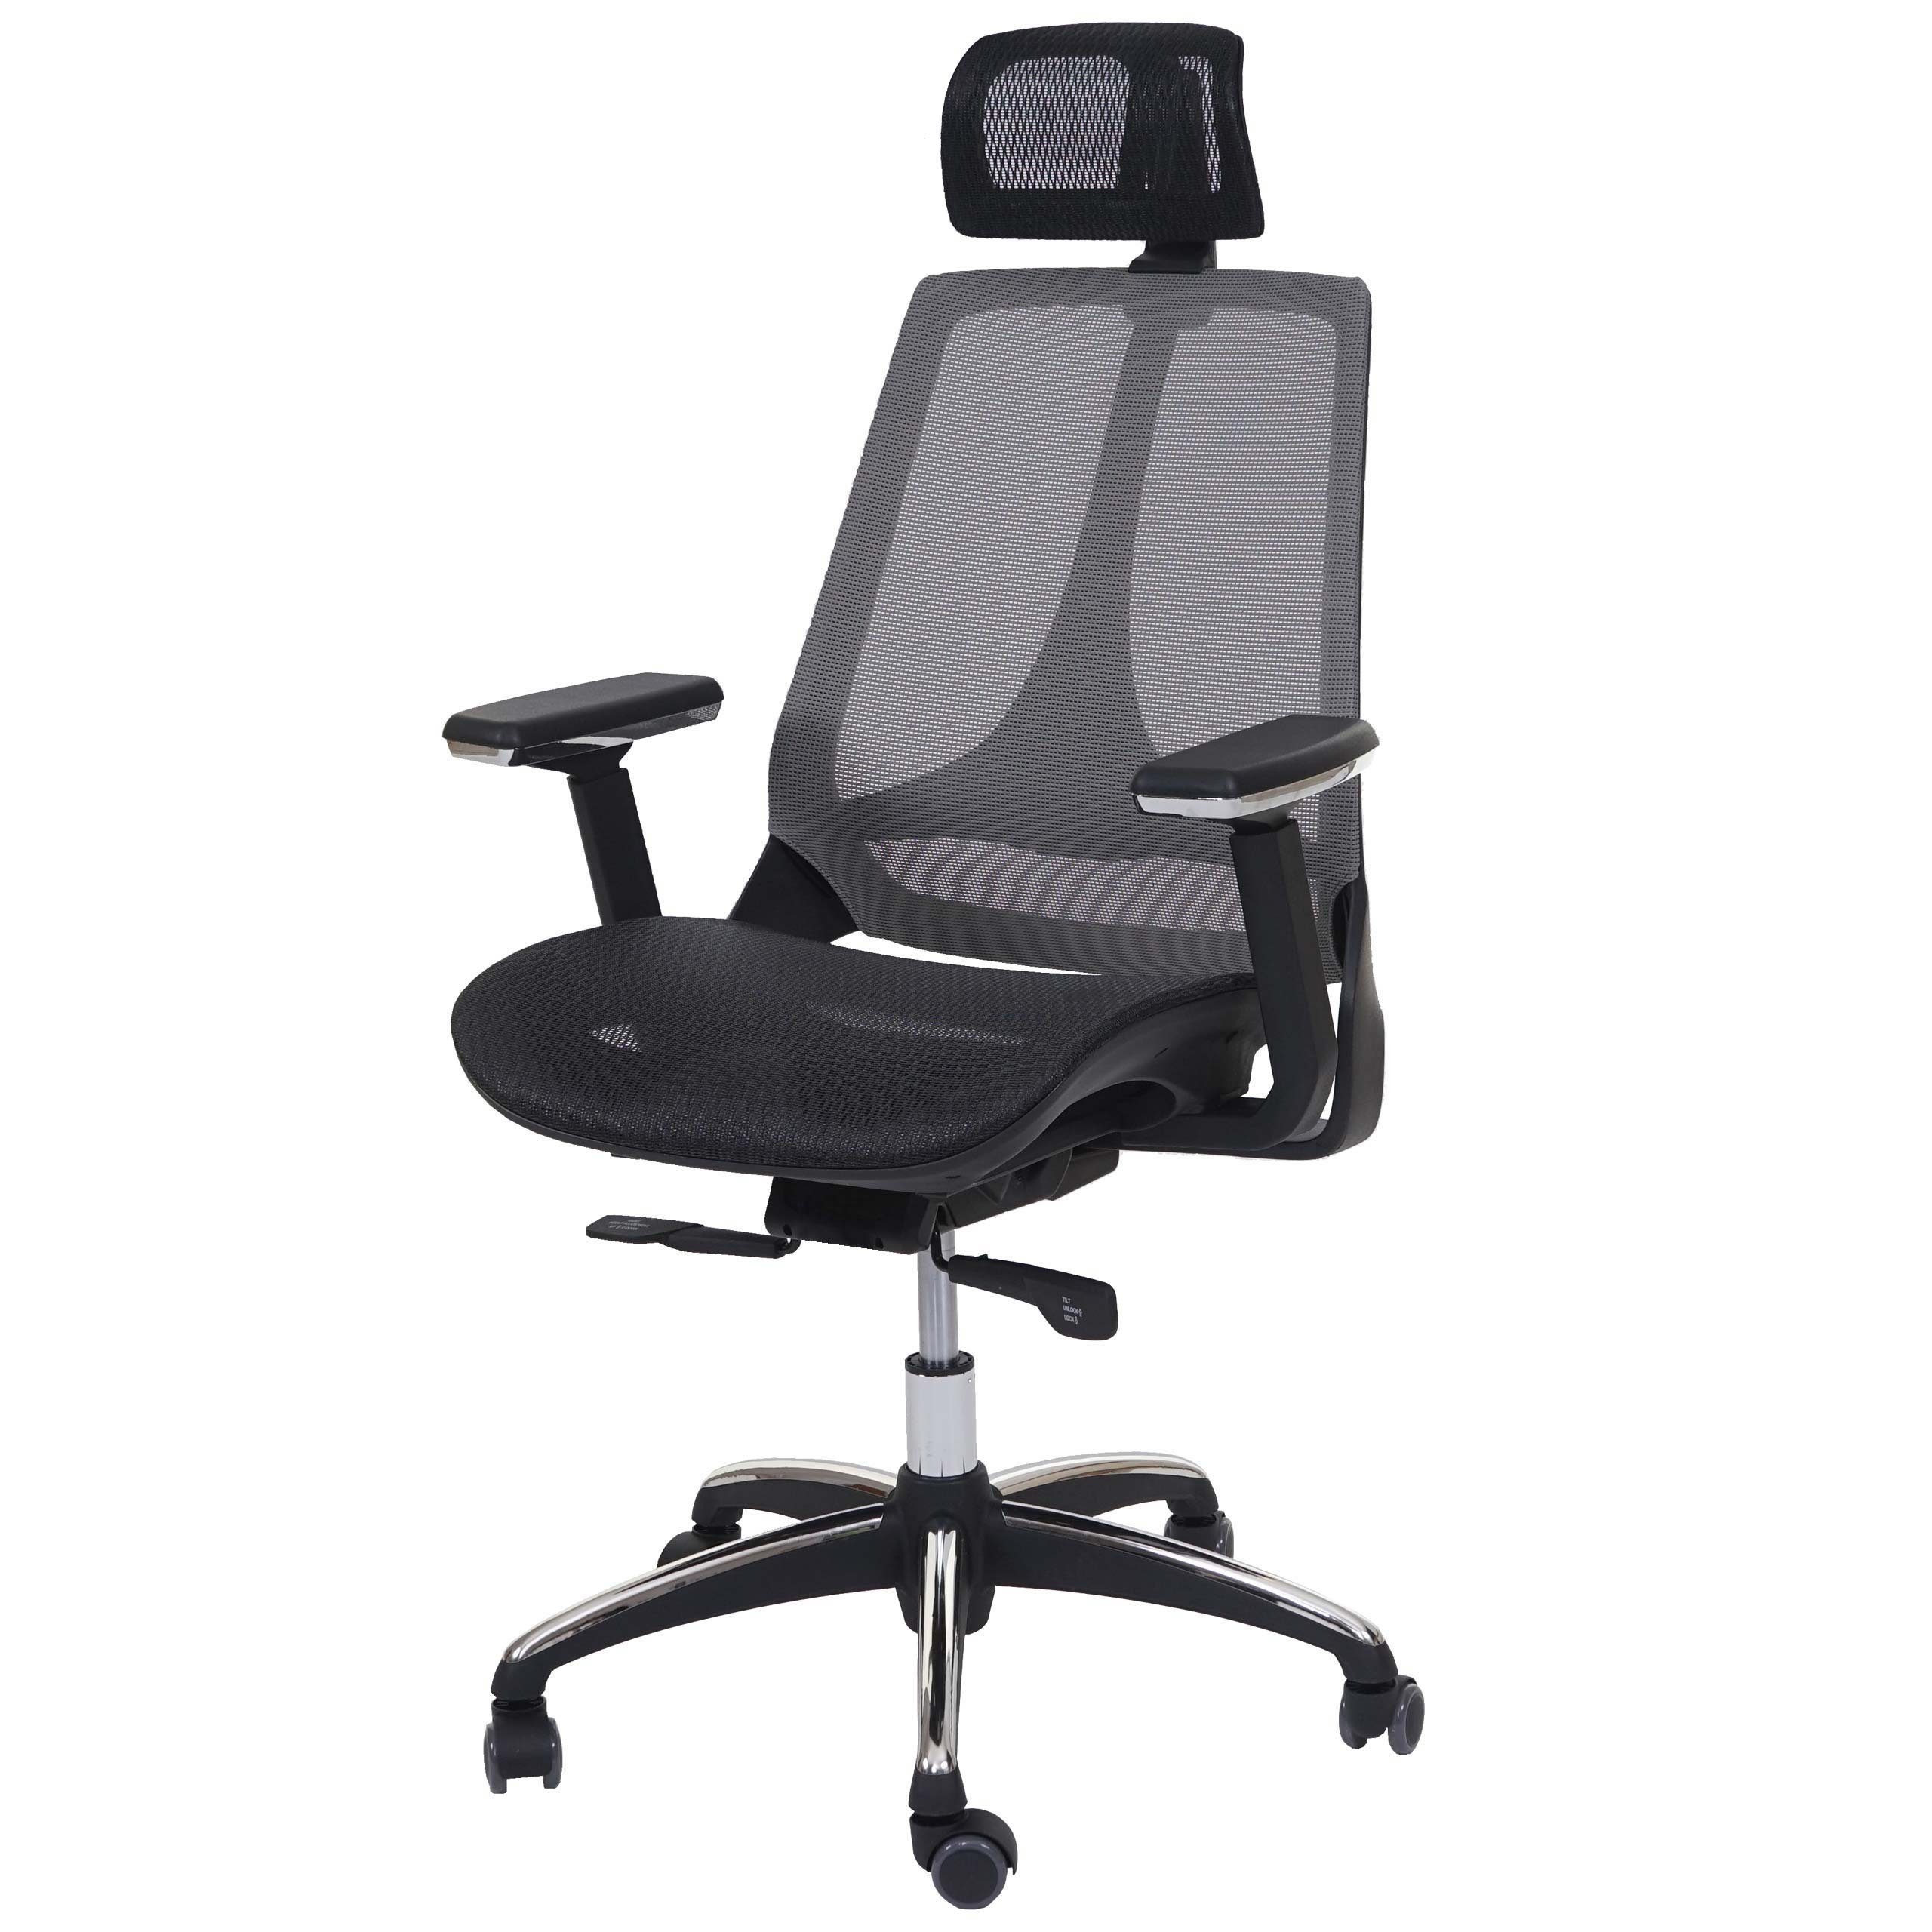 MCW Schreibtischstuhl MCW-A59, Höhenverstellbare Kopfstütze, tiefenverstellbare Sitzfläche schwarz,grau